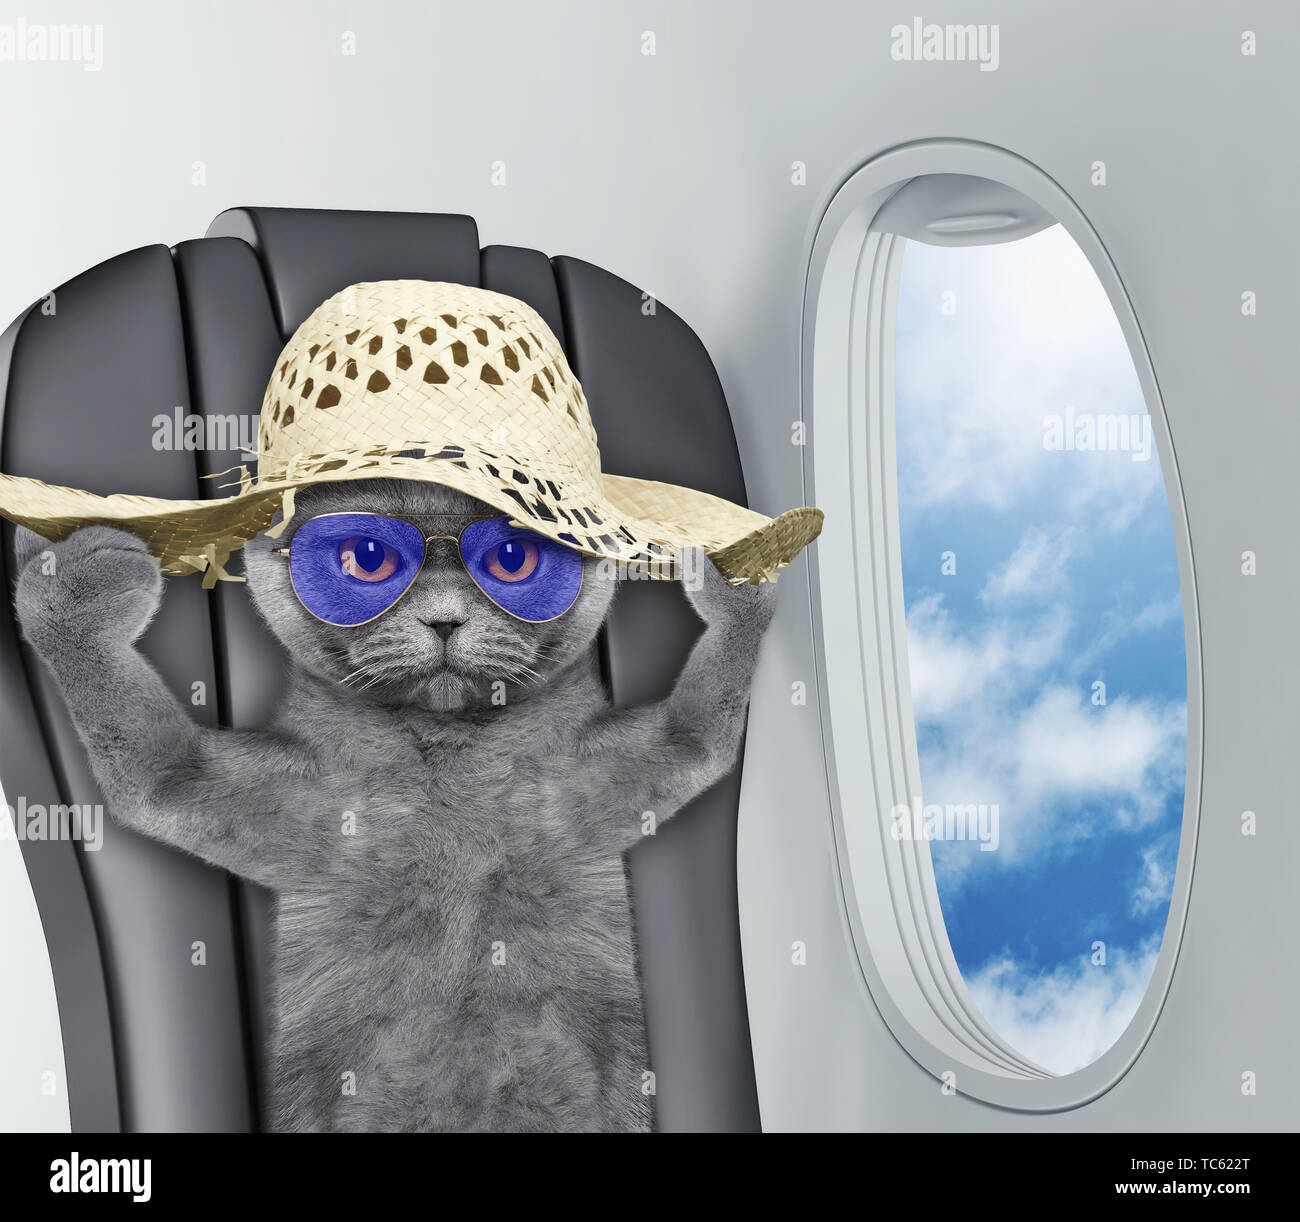 Süße Katze im Hut an Bord von Flugzeug Stockfotografie - Alamy